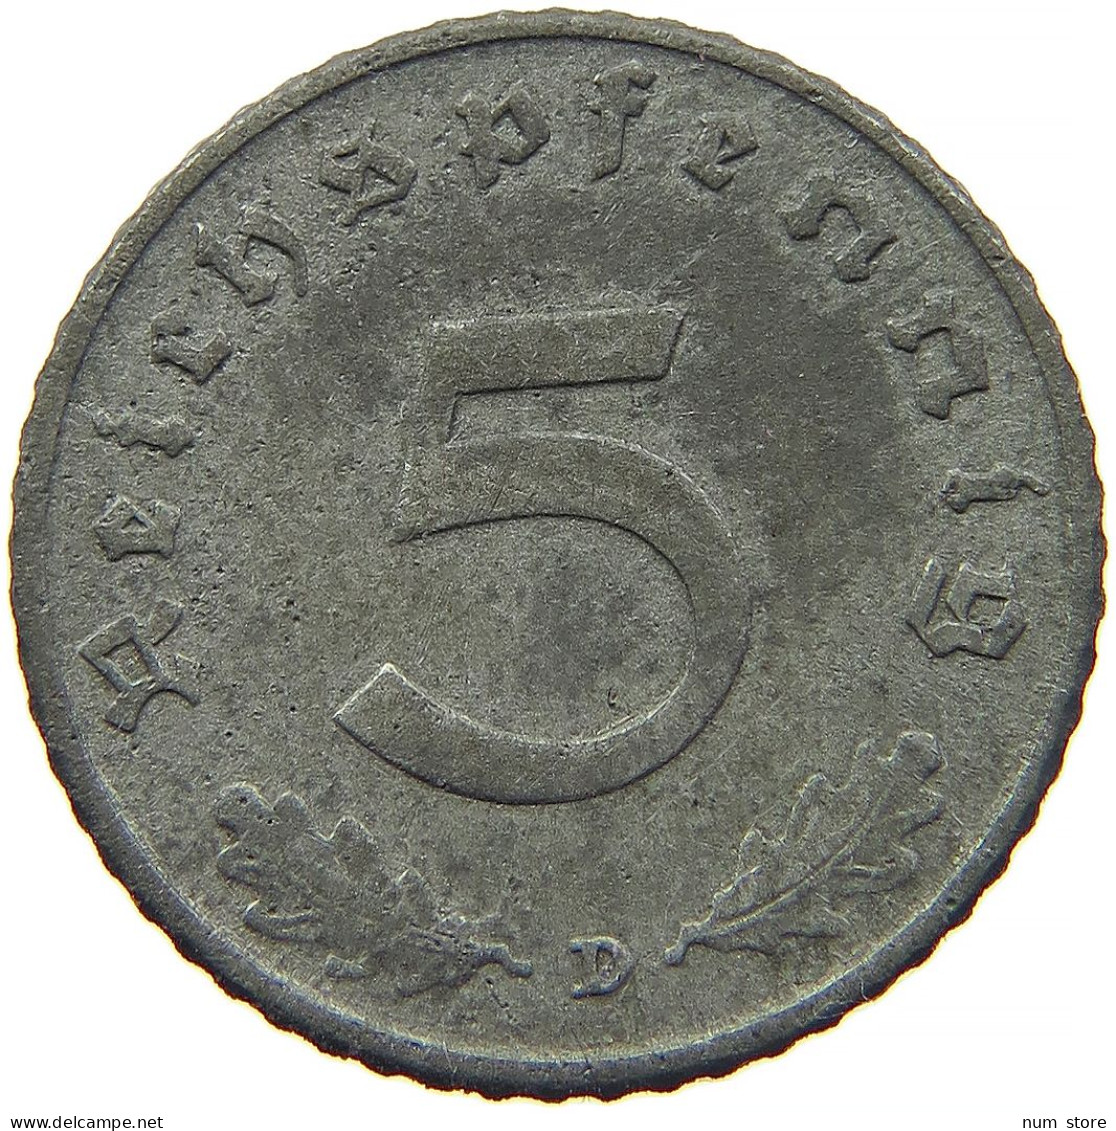 GERMANY 5 REICHSPFENNIG 1942 D #s091 0821 - 5 Reichspfennig